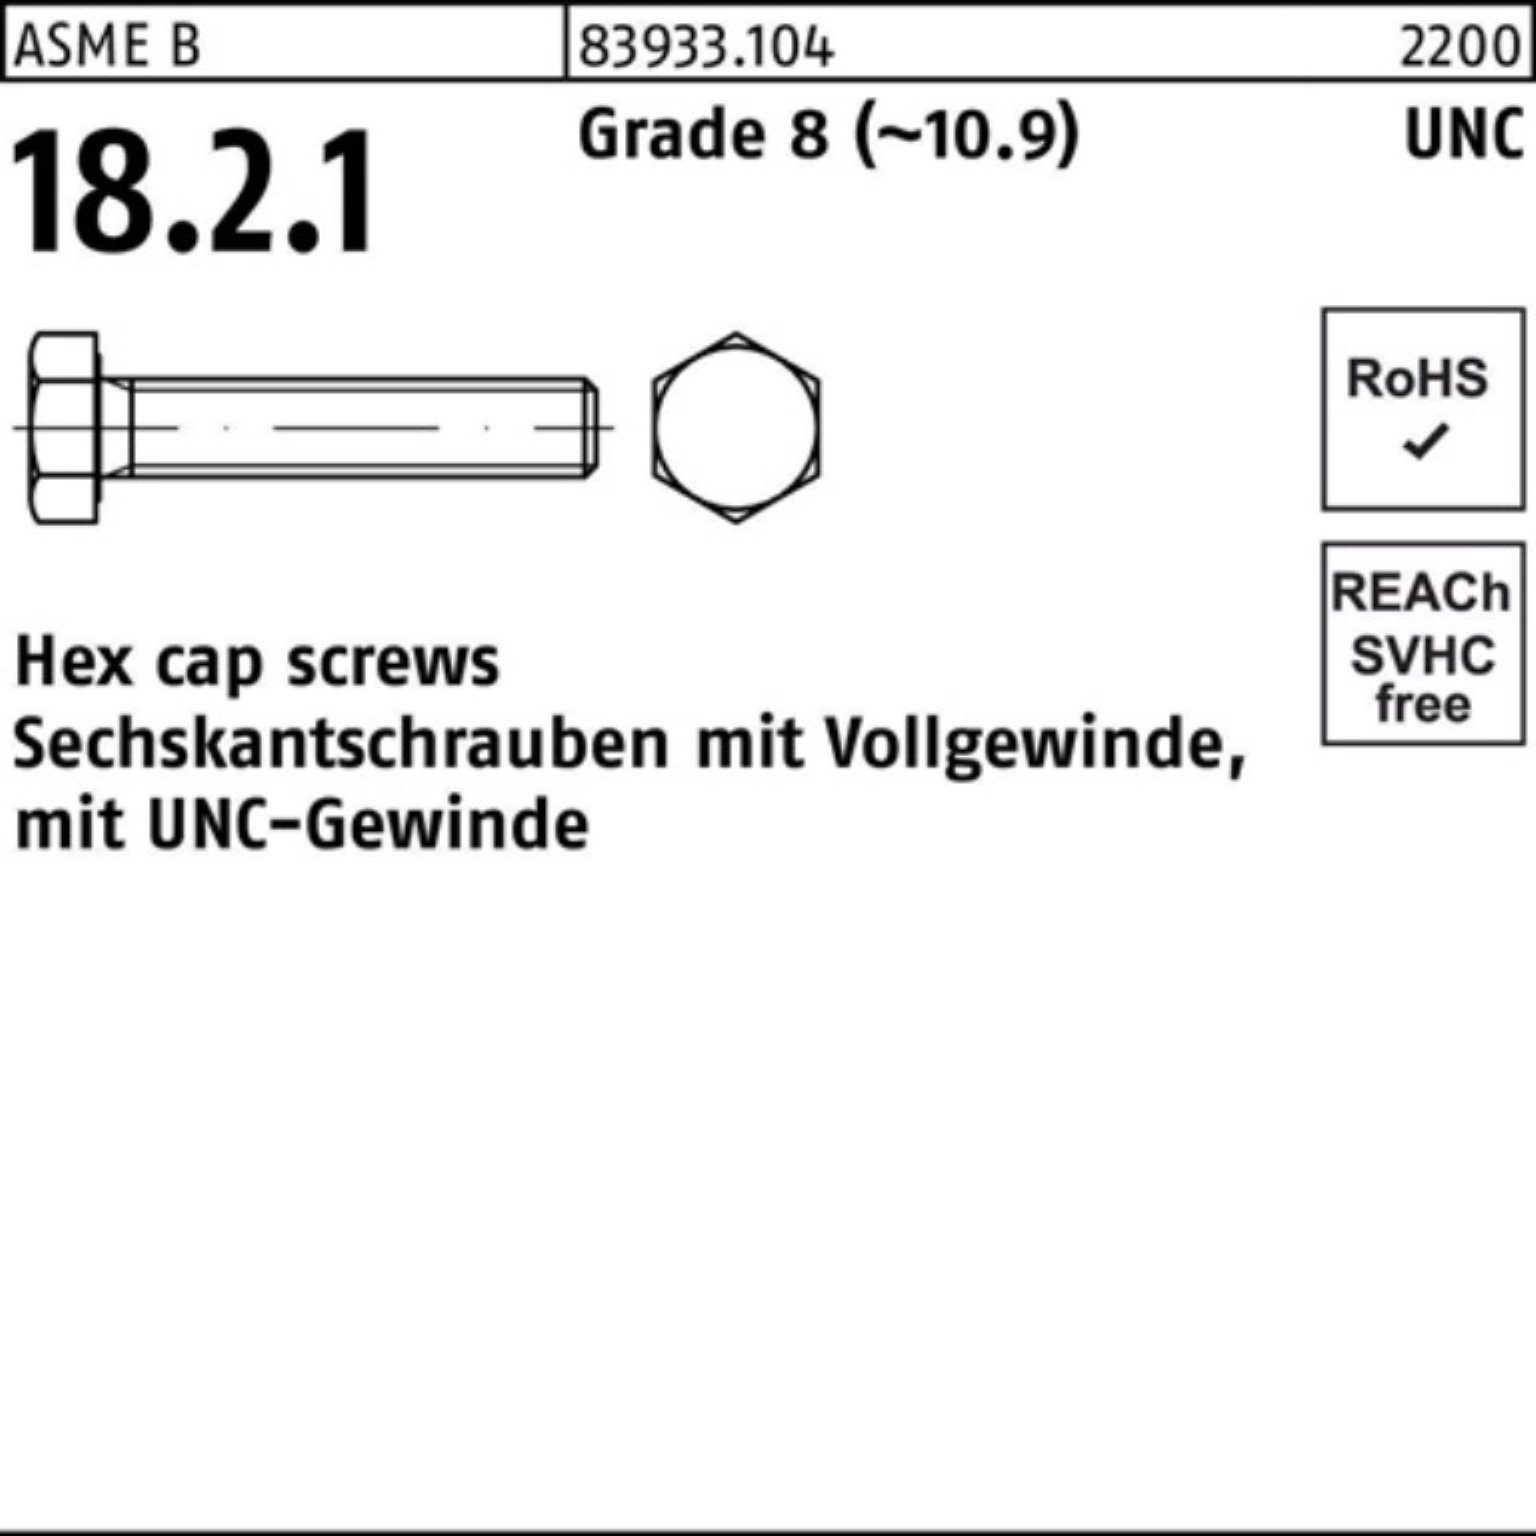 Reyher Sechskantschraube 100er Pack Sechskantschraube R 83933 UNC-Gewinde VG 3/8x 5/8 Grade 8